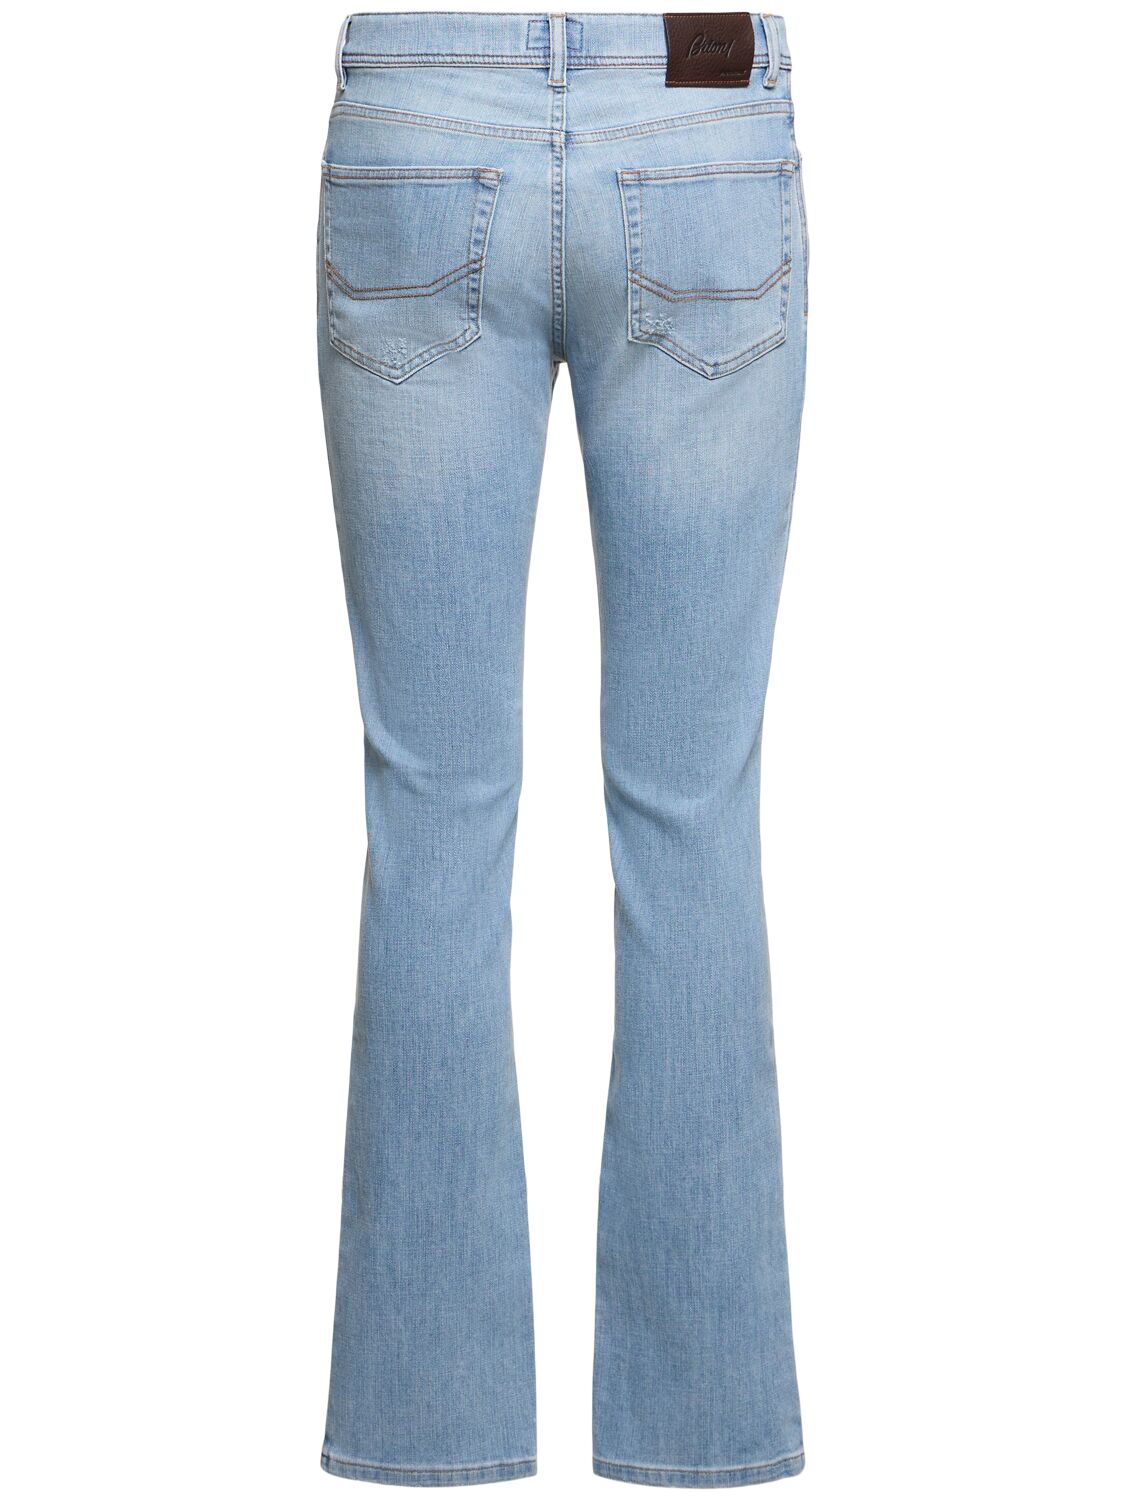 Shop Brioni Meribel Stretch Cotton Denim Jeans In Bright Blue